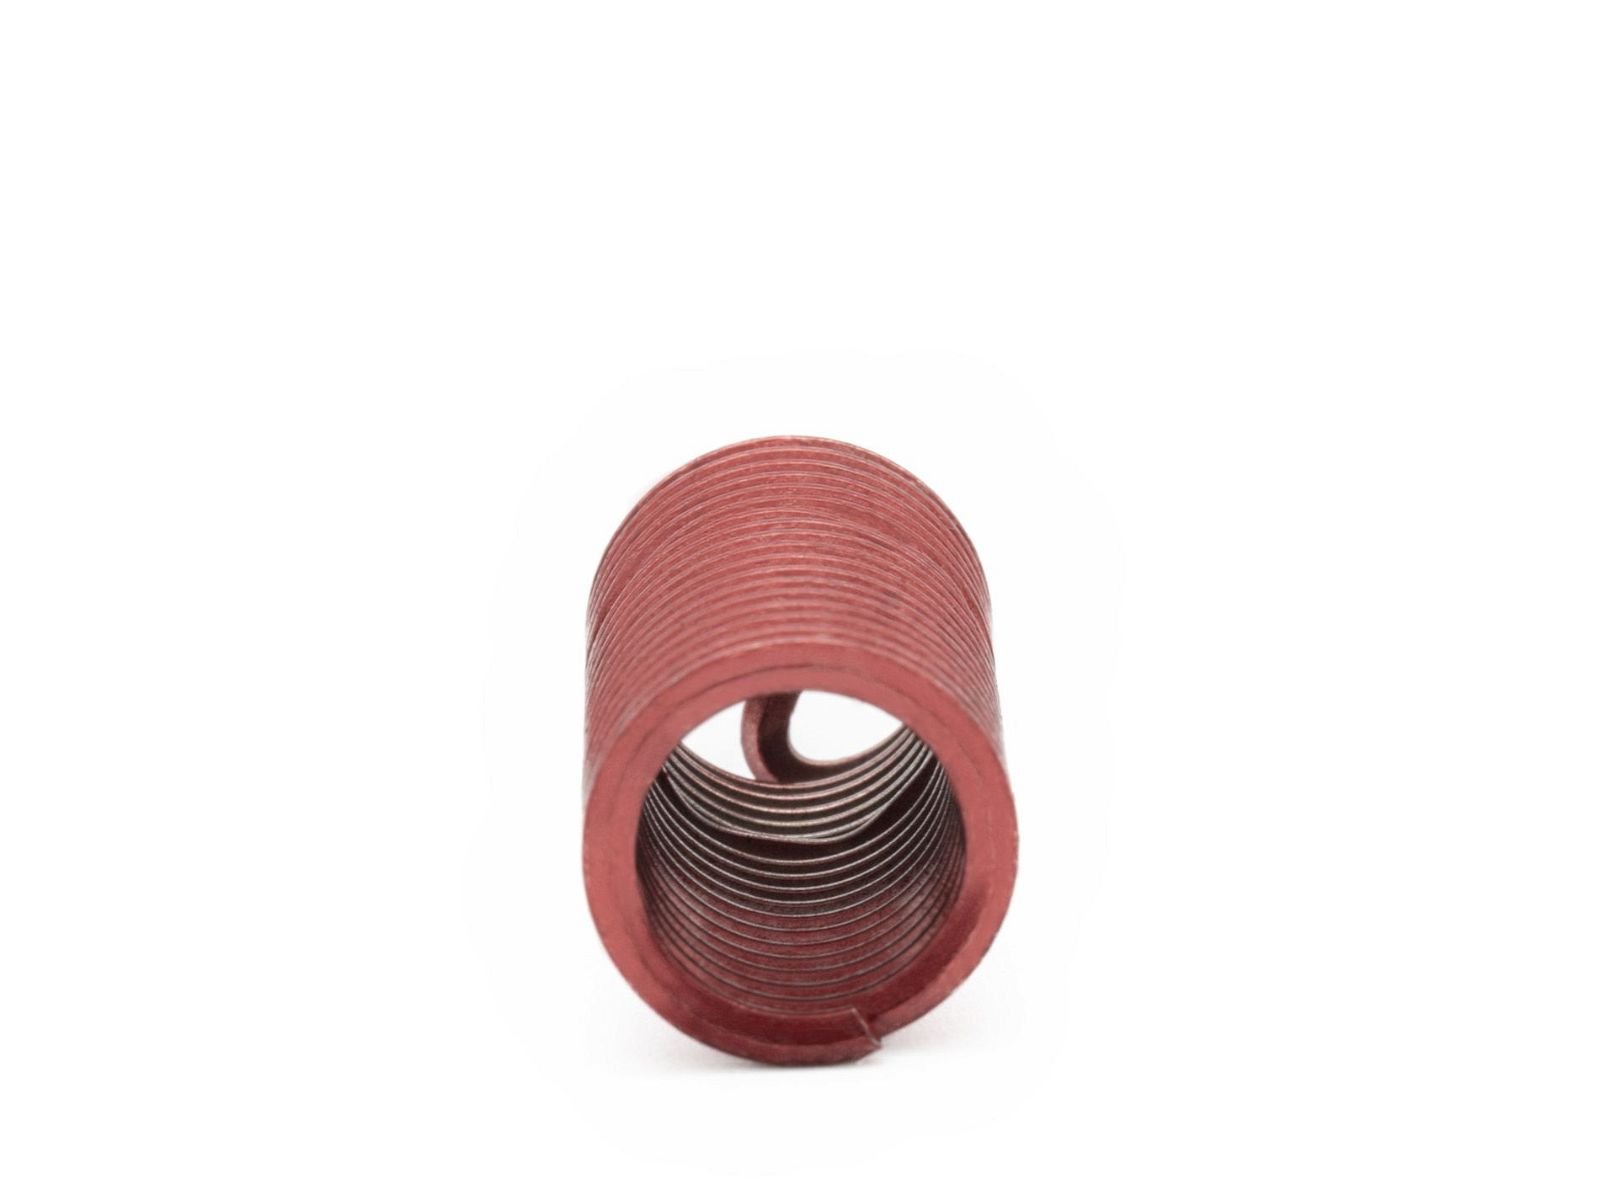 BaerCoil Drahtgewindeeinsätze UNC No. 8 x 32 - 3,0 D (12,5 mm) - screw grip (schraubensichernd) - 100 Stück